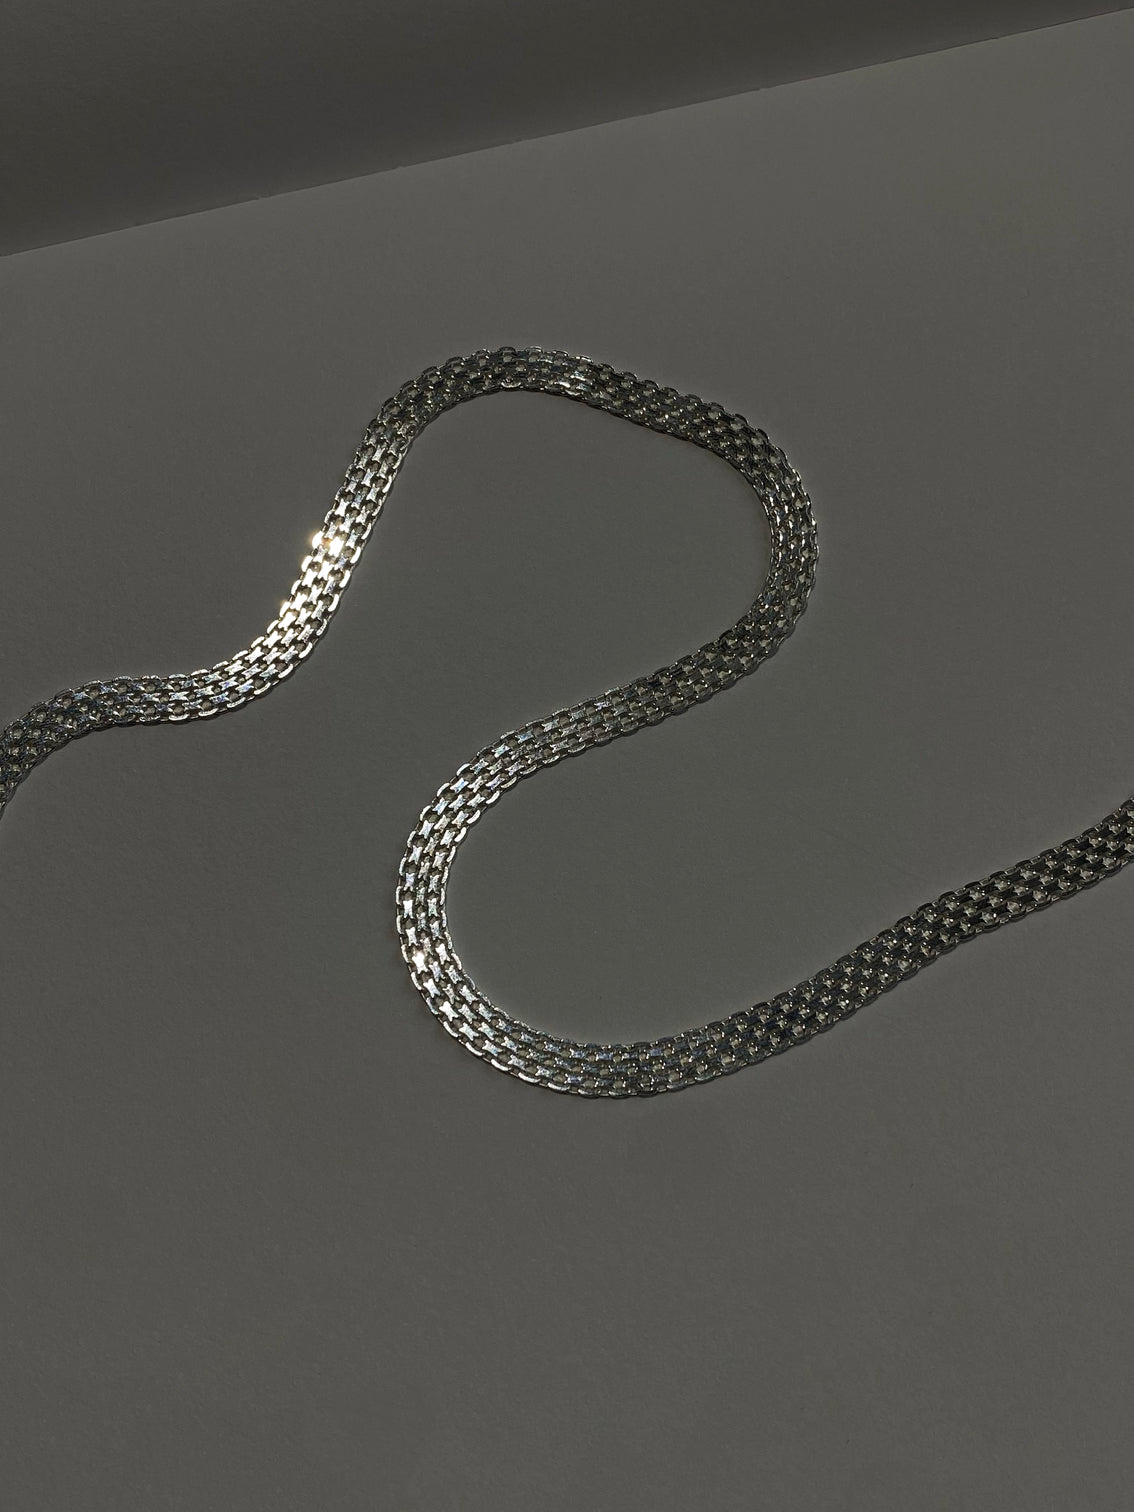 Silver checkered link wide chain on dark background